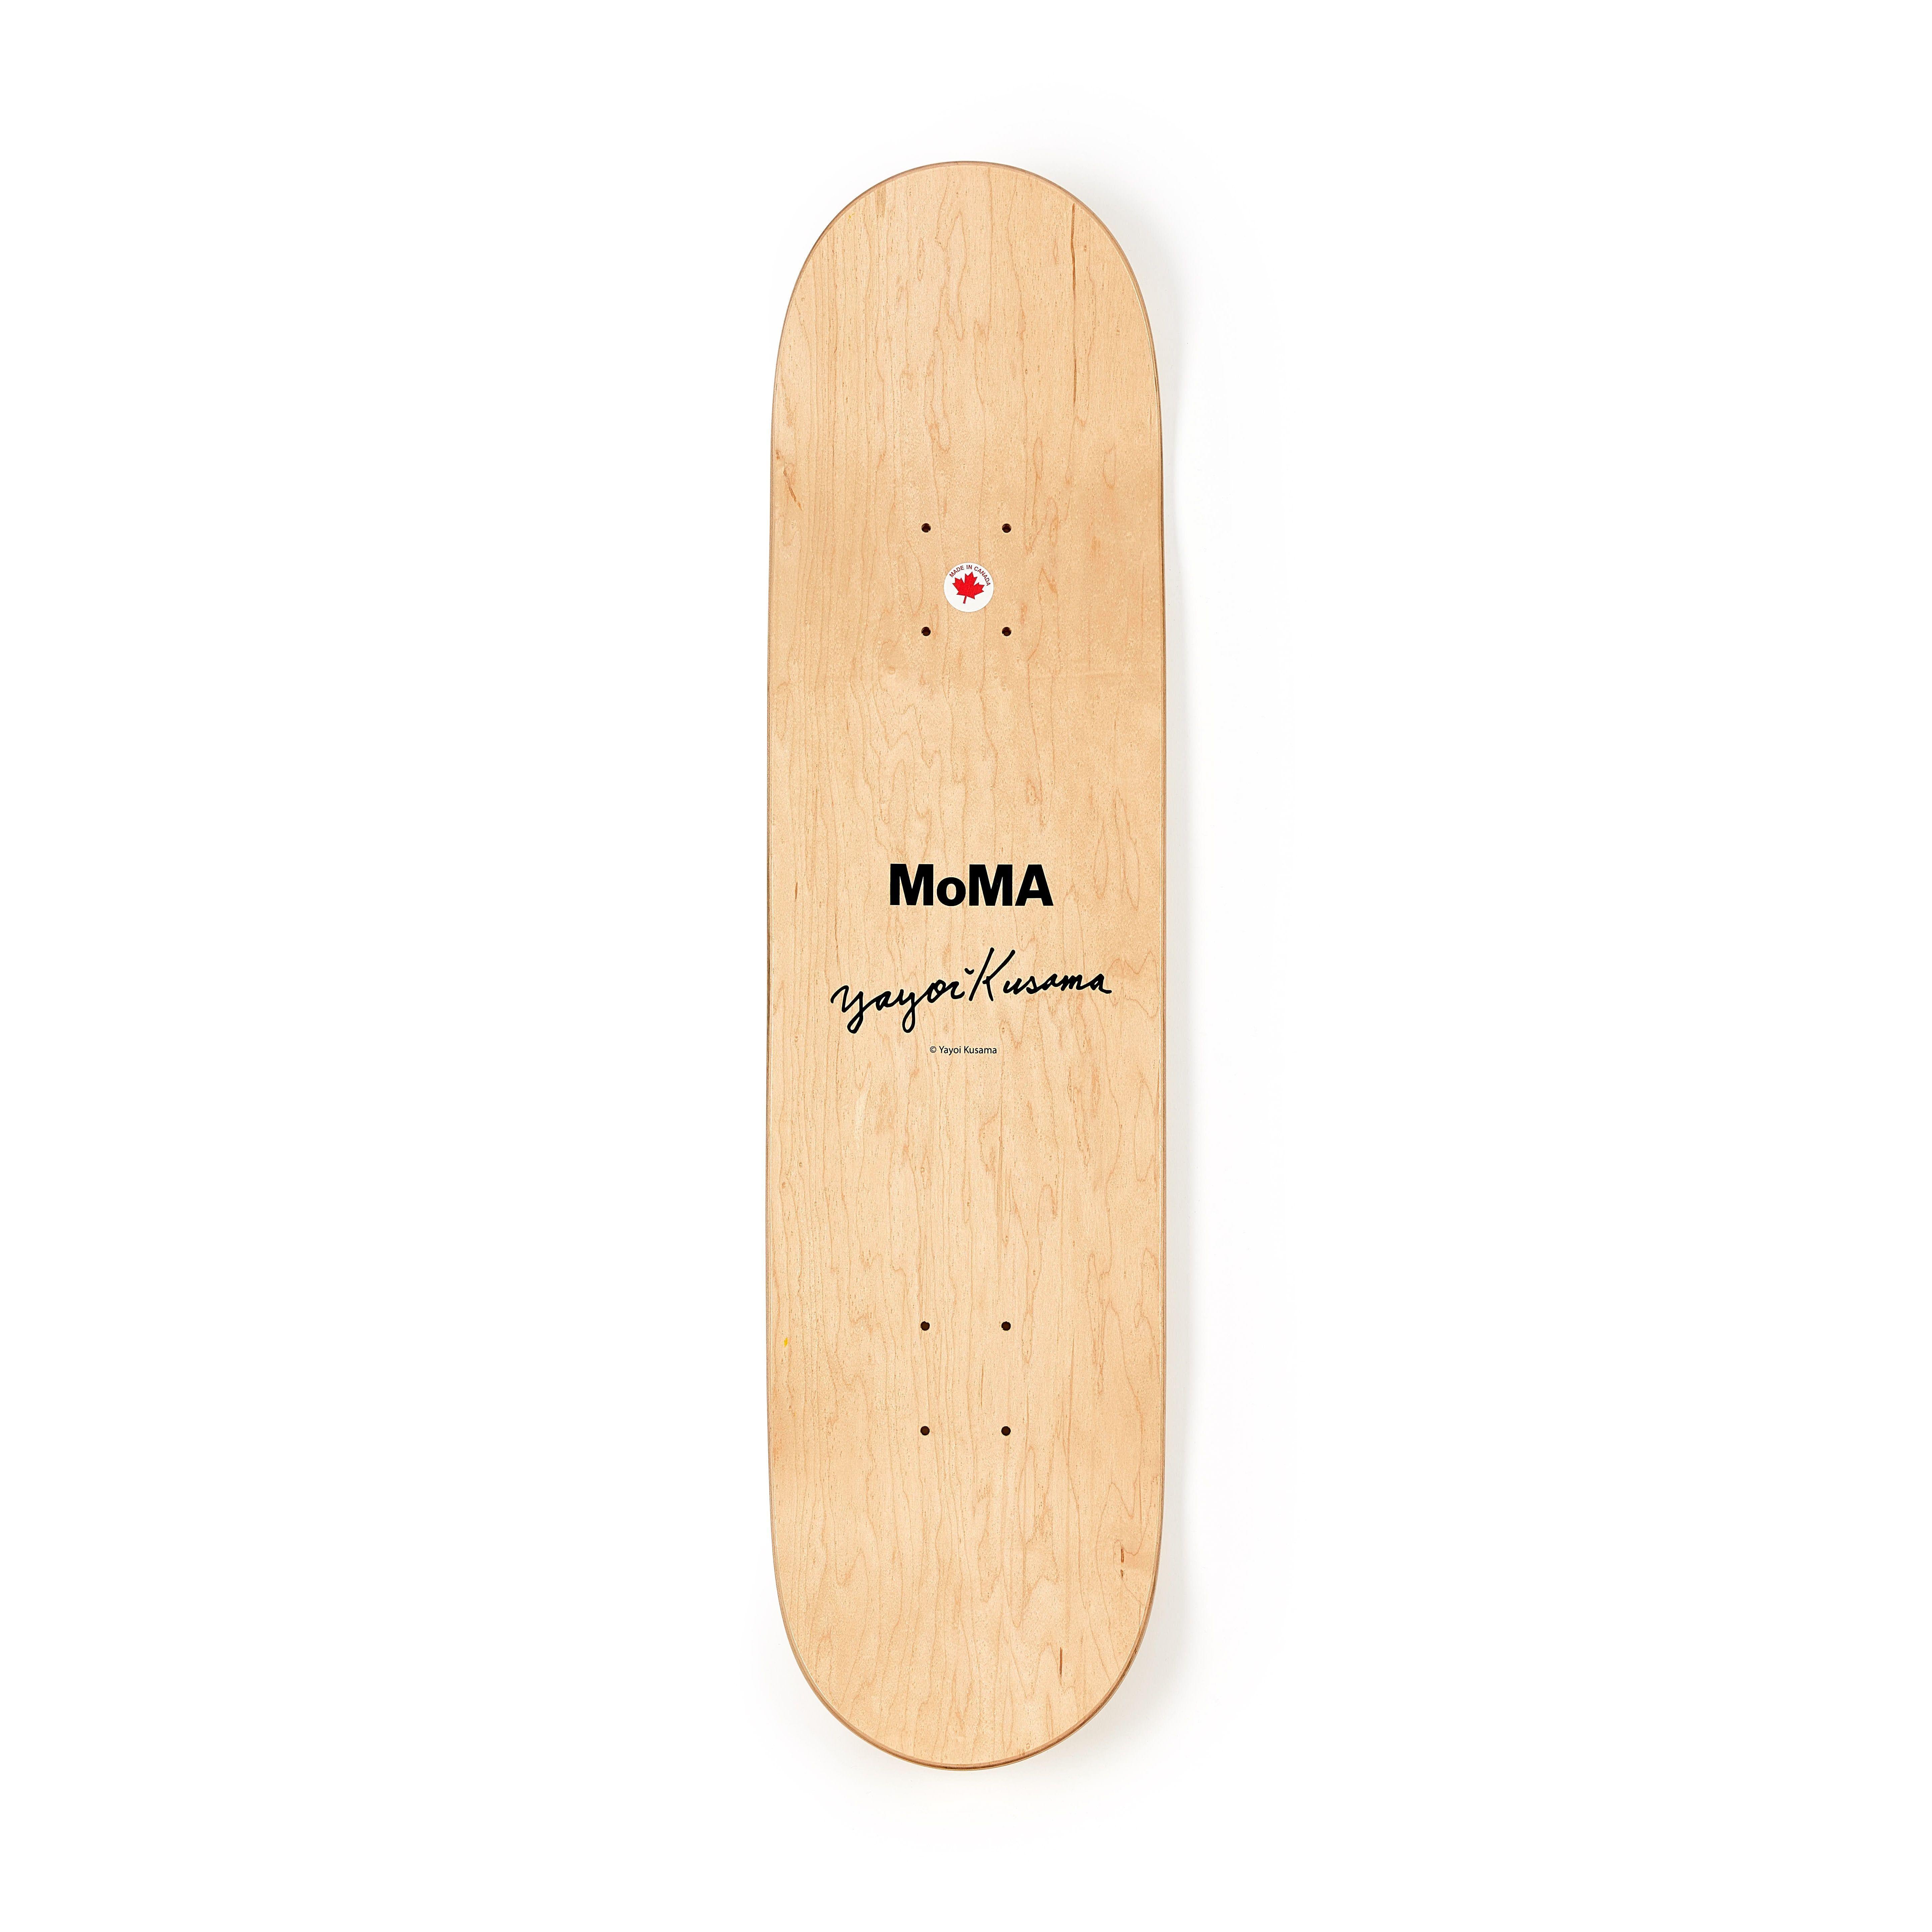 Kusama Skateboard deck (Yayoi Kusama MoMa)  1